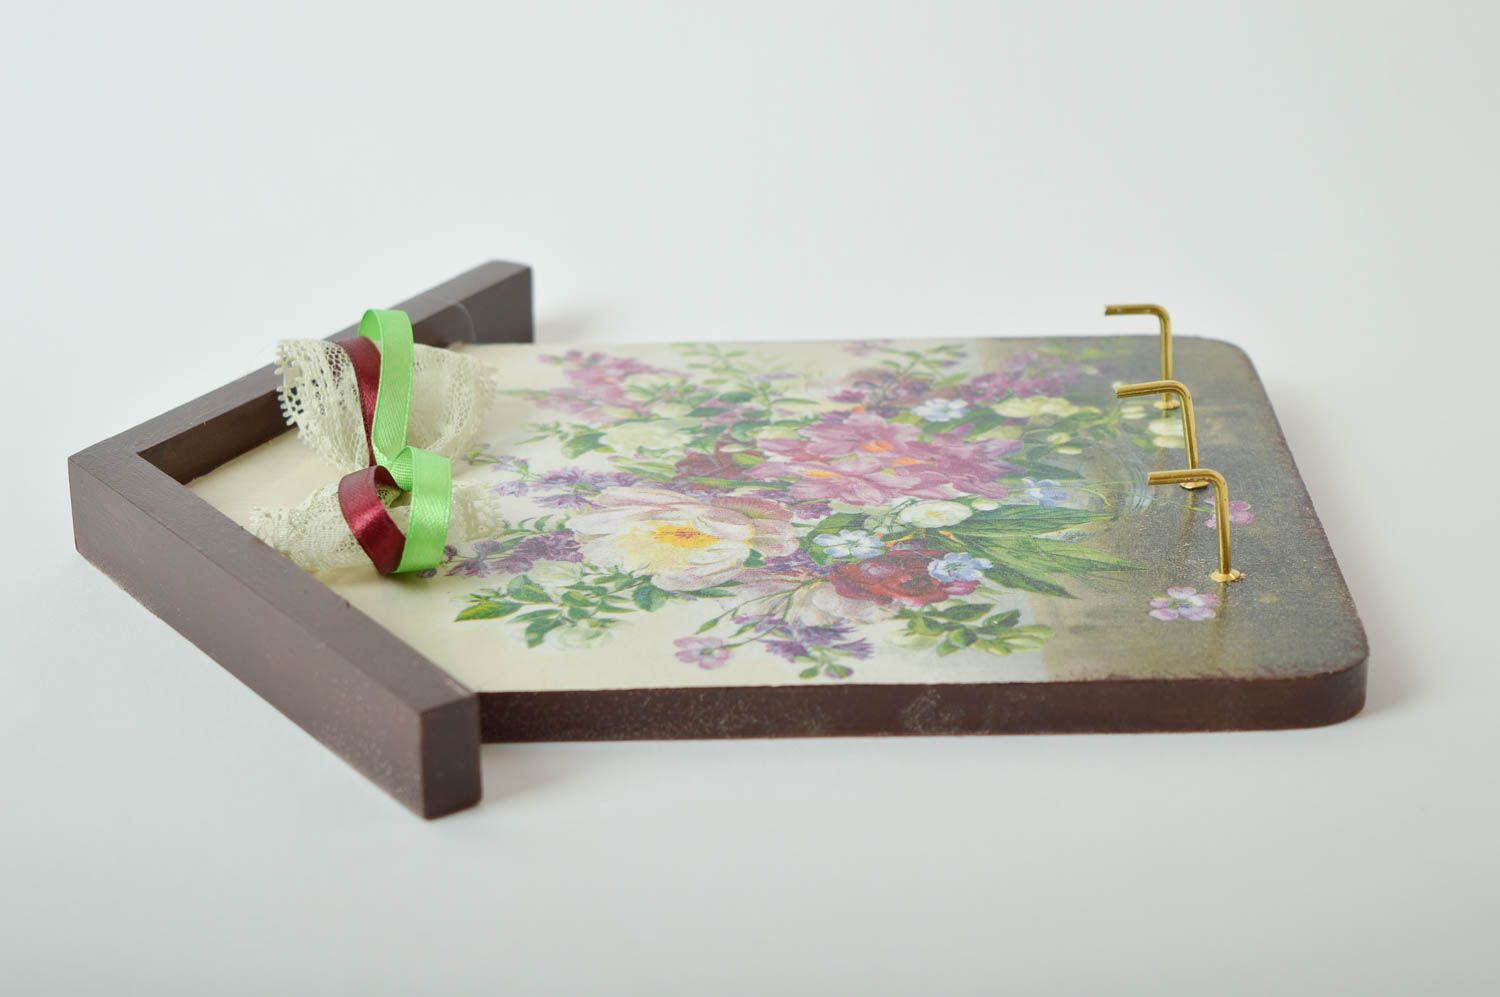 Handmade Wandhaken für Schlüssel Haus Schlüsselbrett aus Holz Haus Deko bunt foto 5